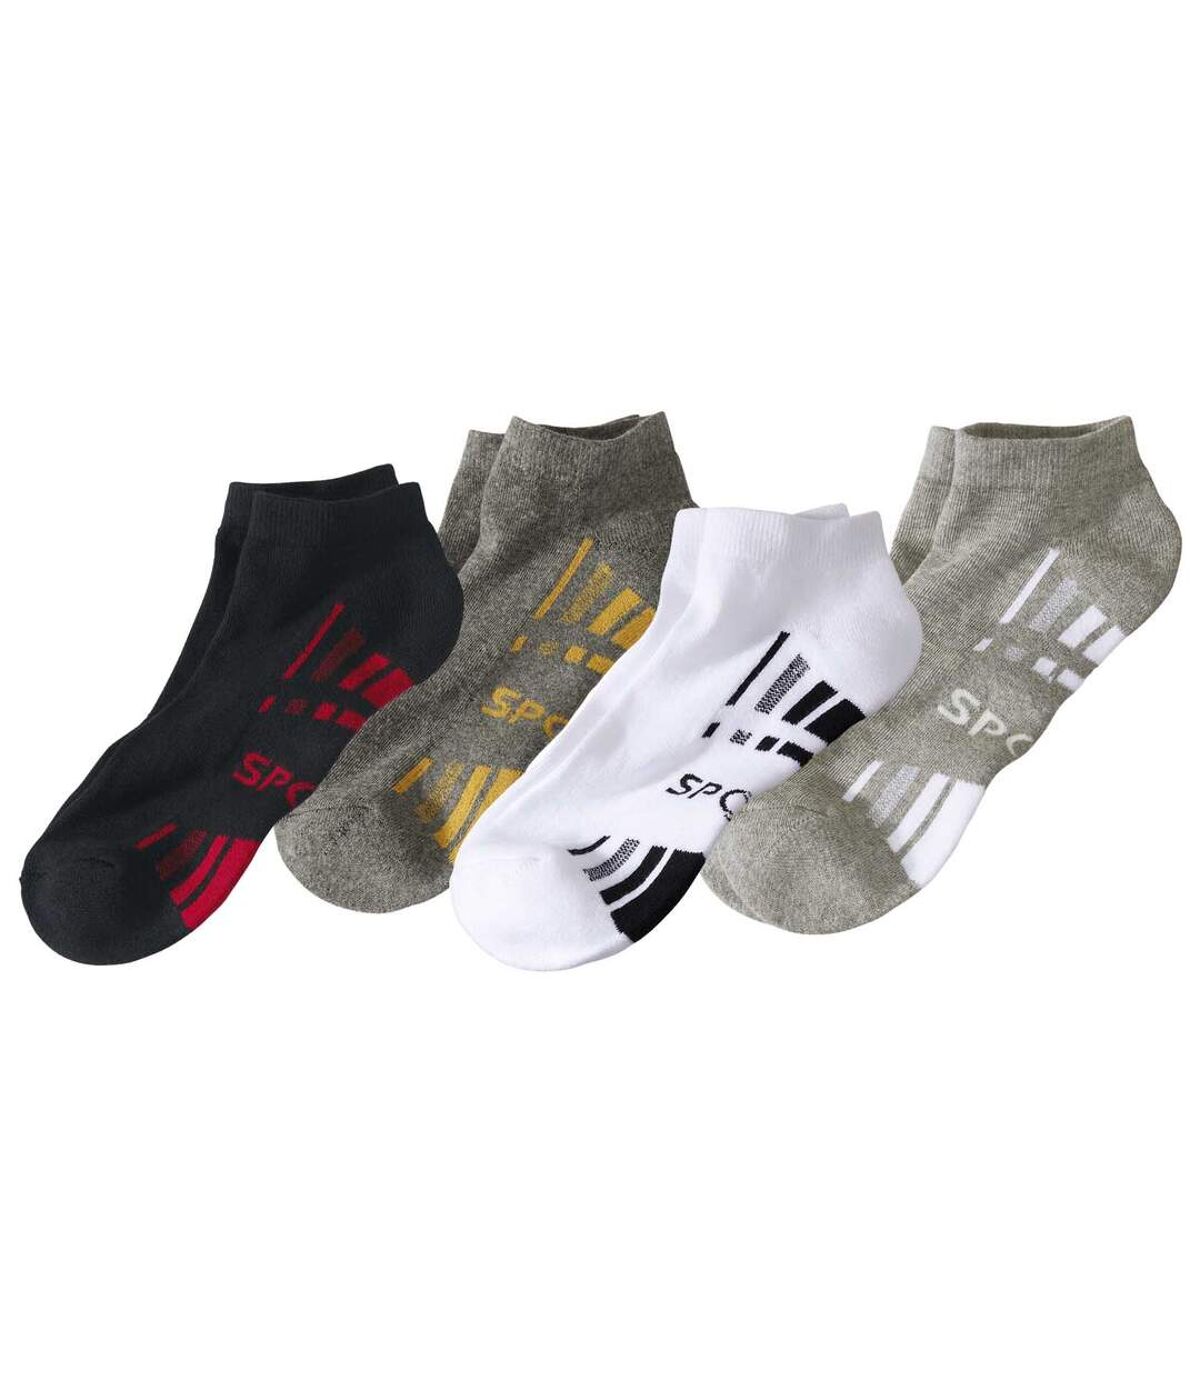 Pack of 4 Pairs of Men's Sneaker Socks - White Black Gray Atlas For Men